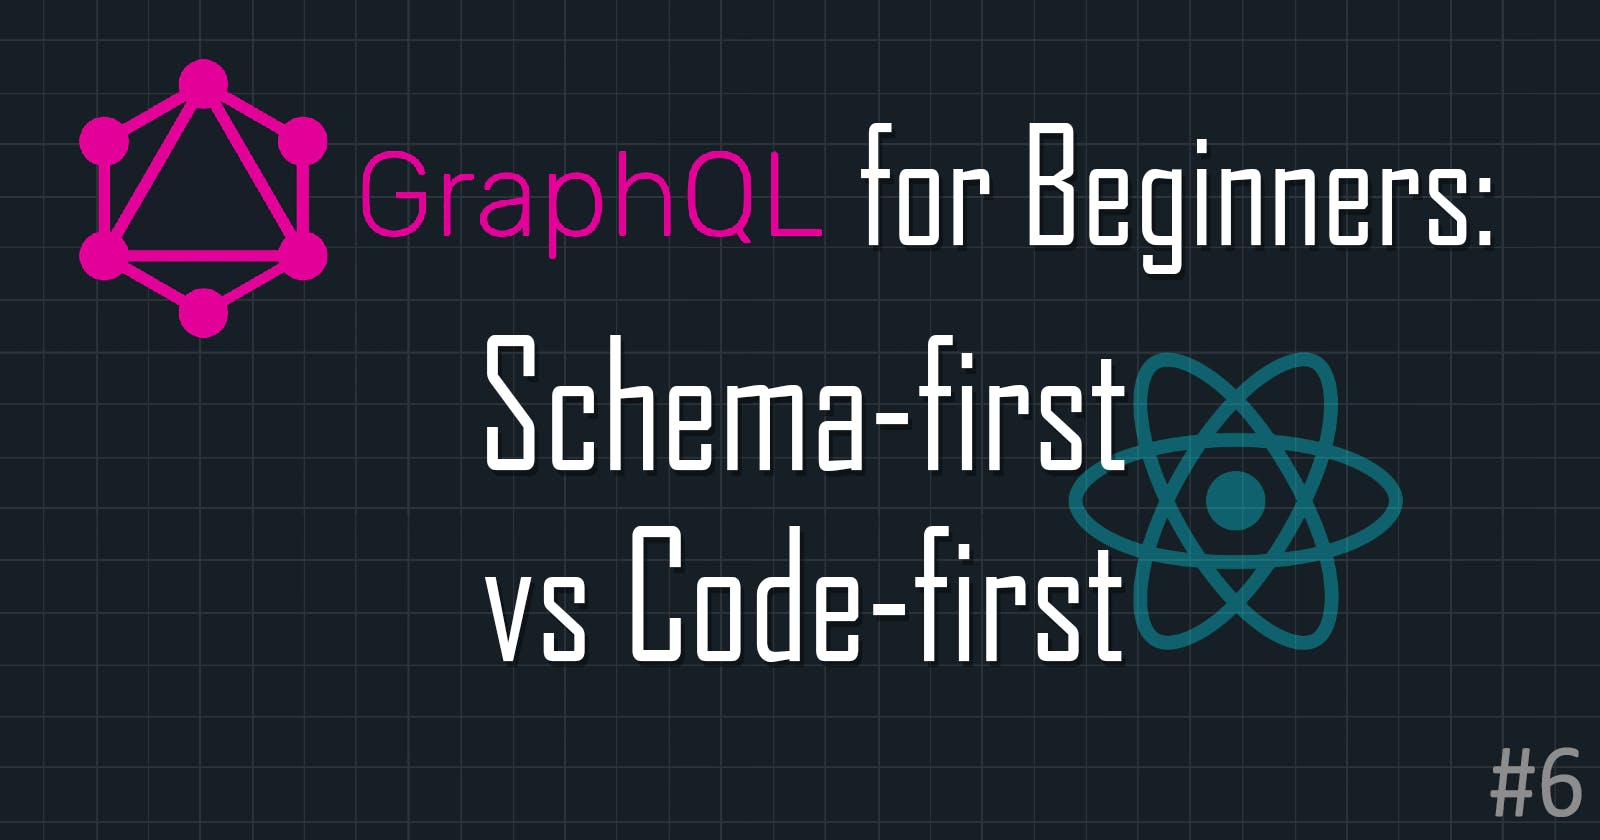 GraphQL for Beginners: Schema-first vs Code-first